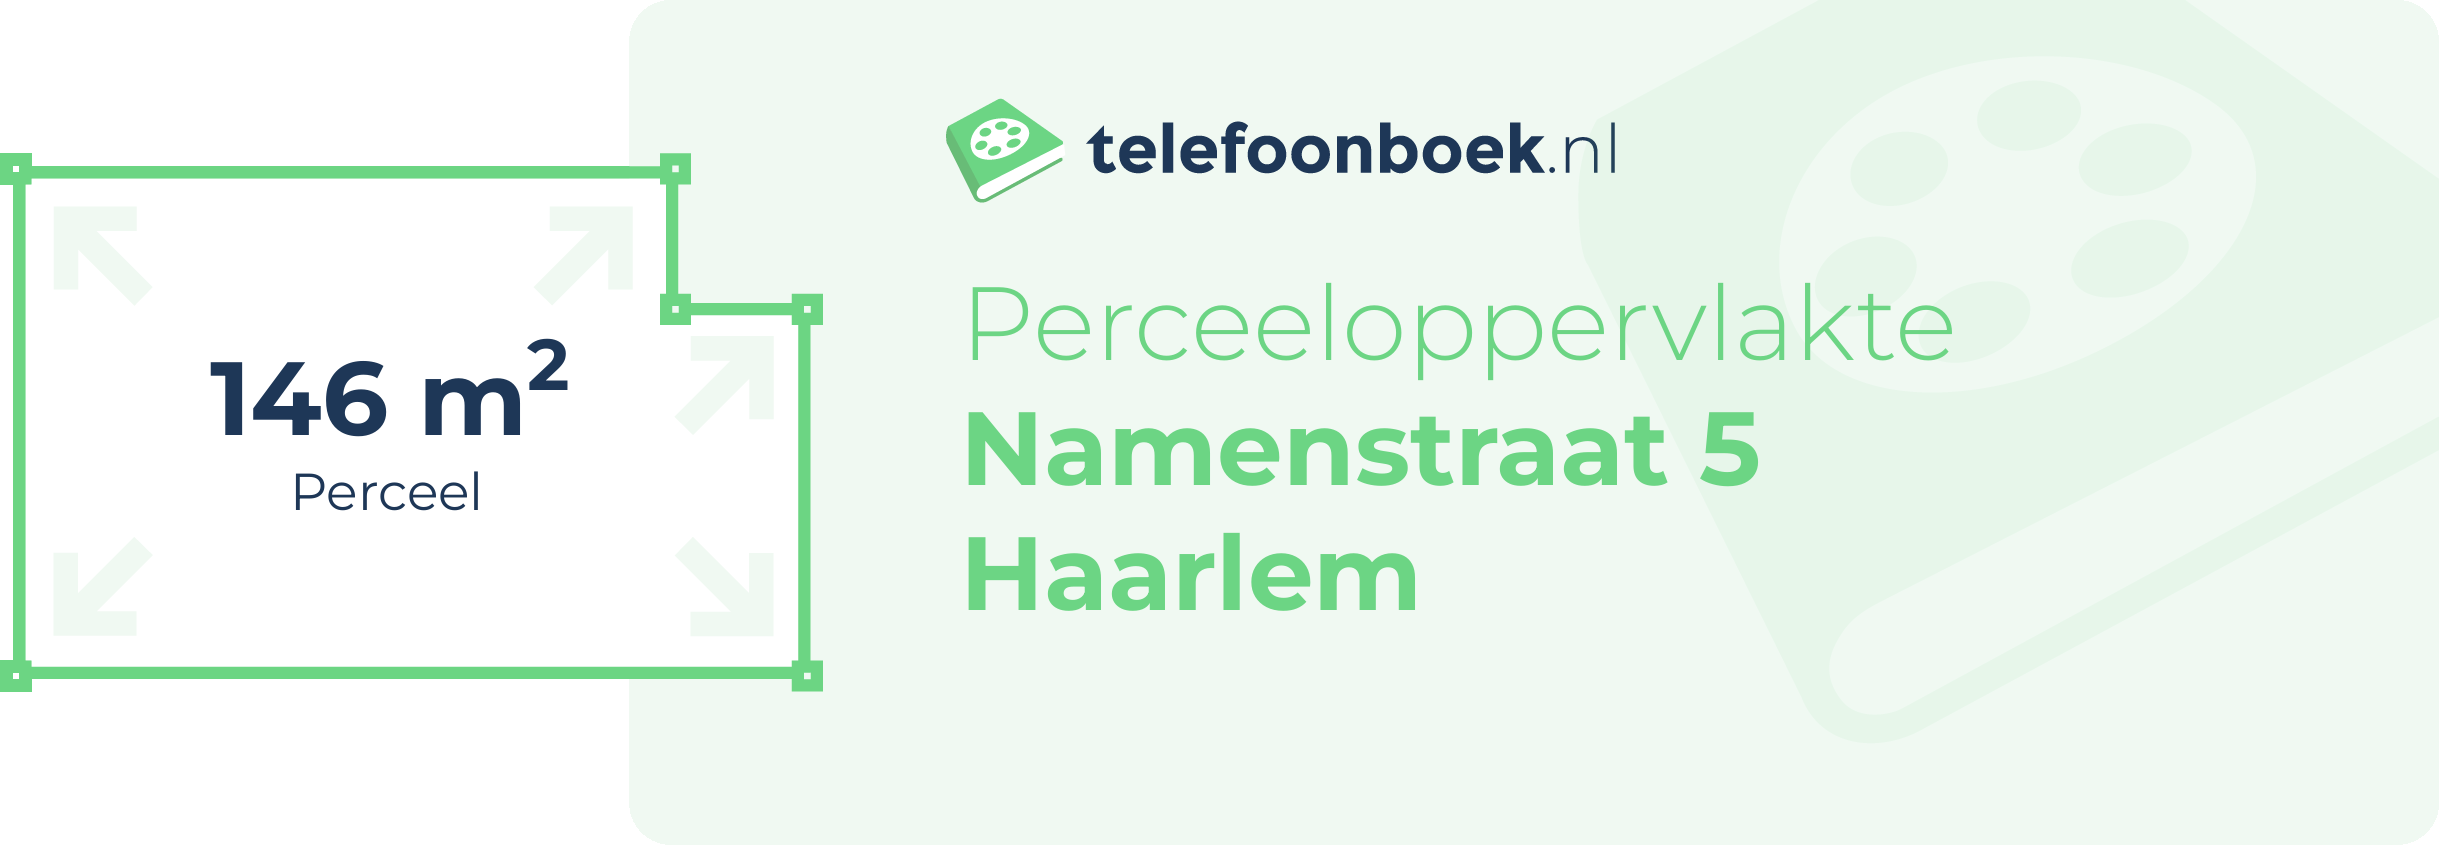 Perceeloppervlakte Namenstraat 5 Haarlem